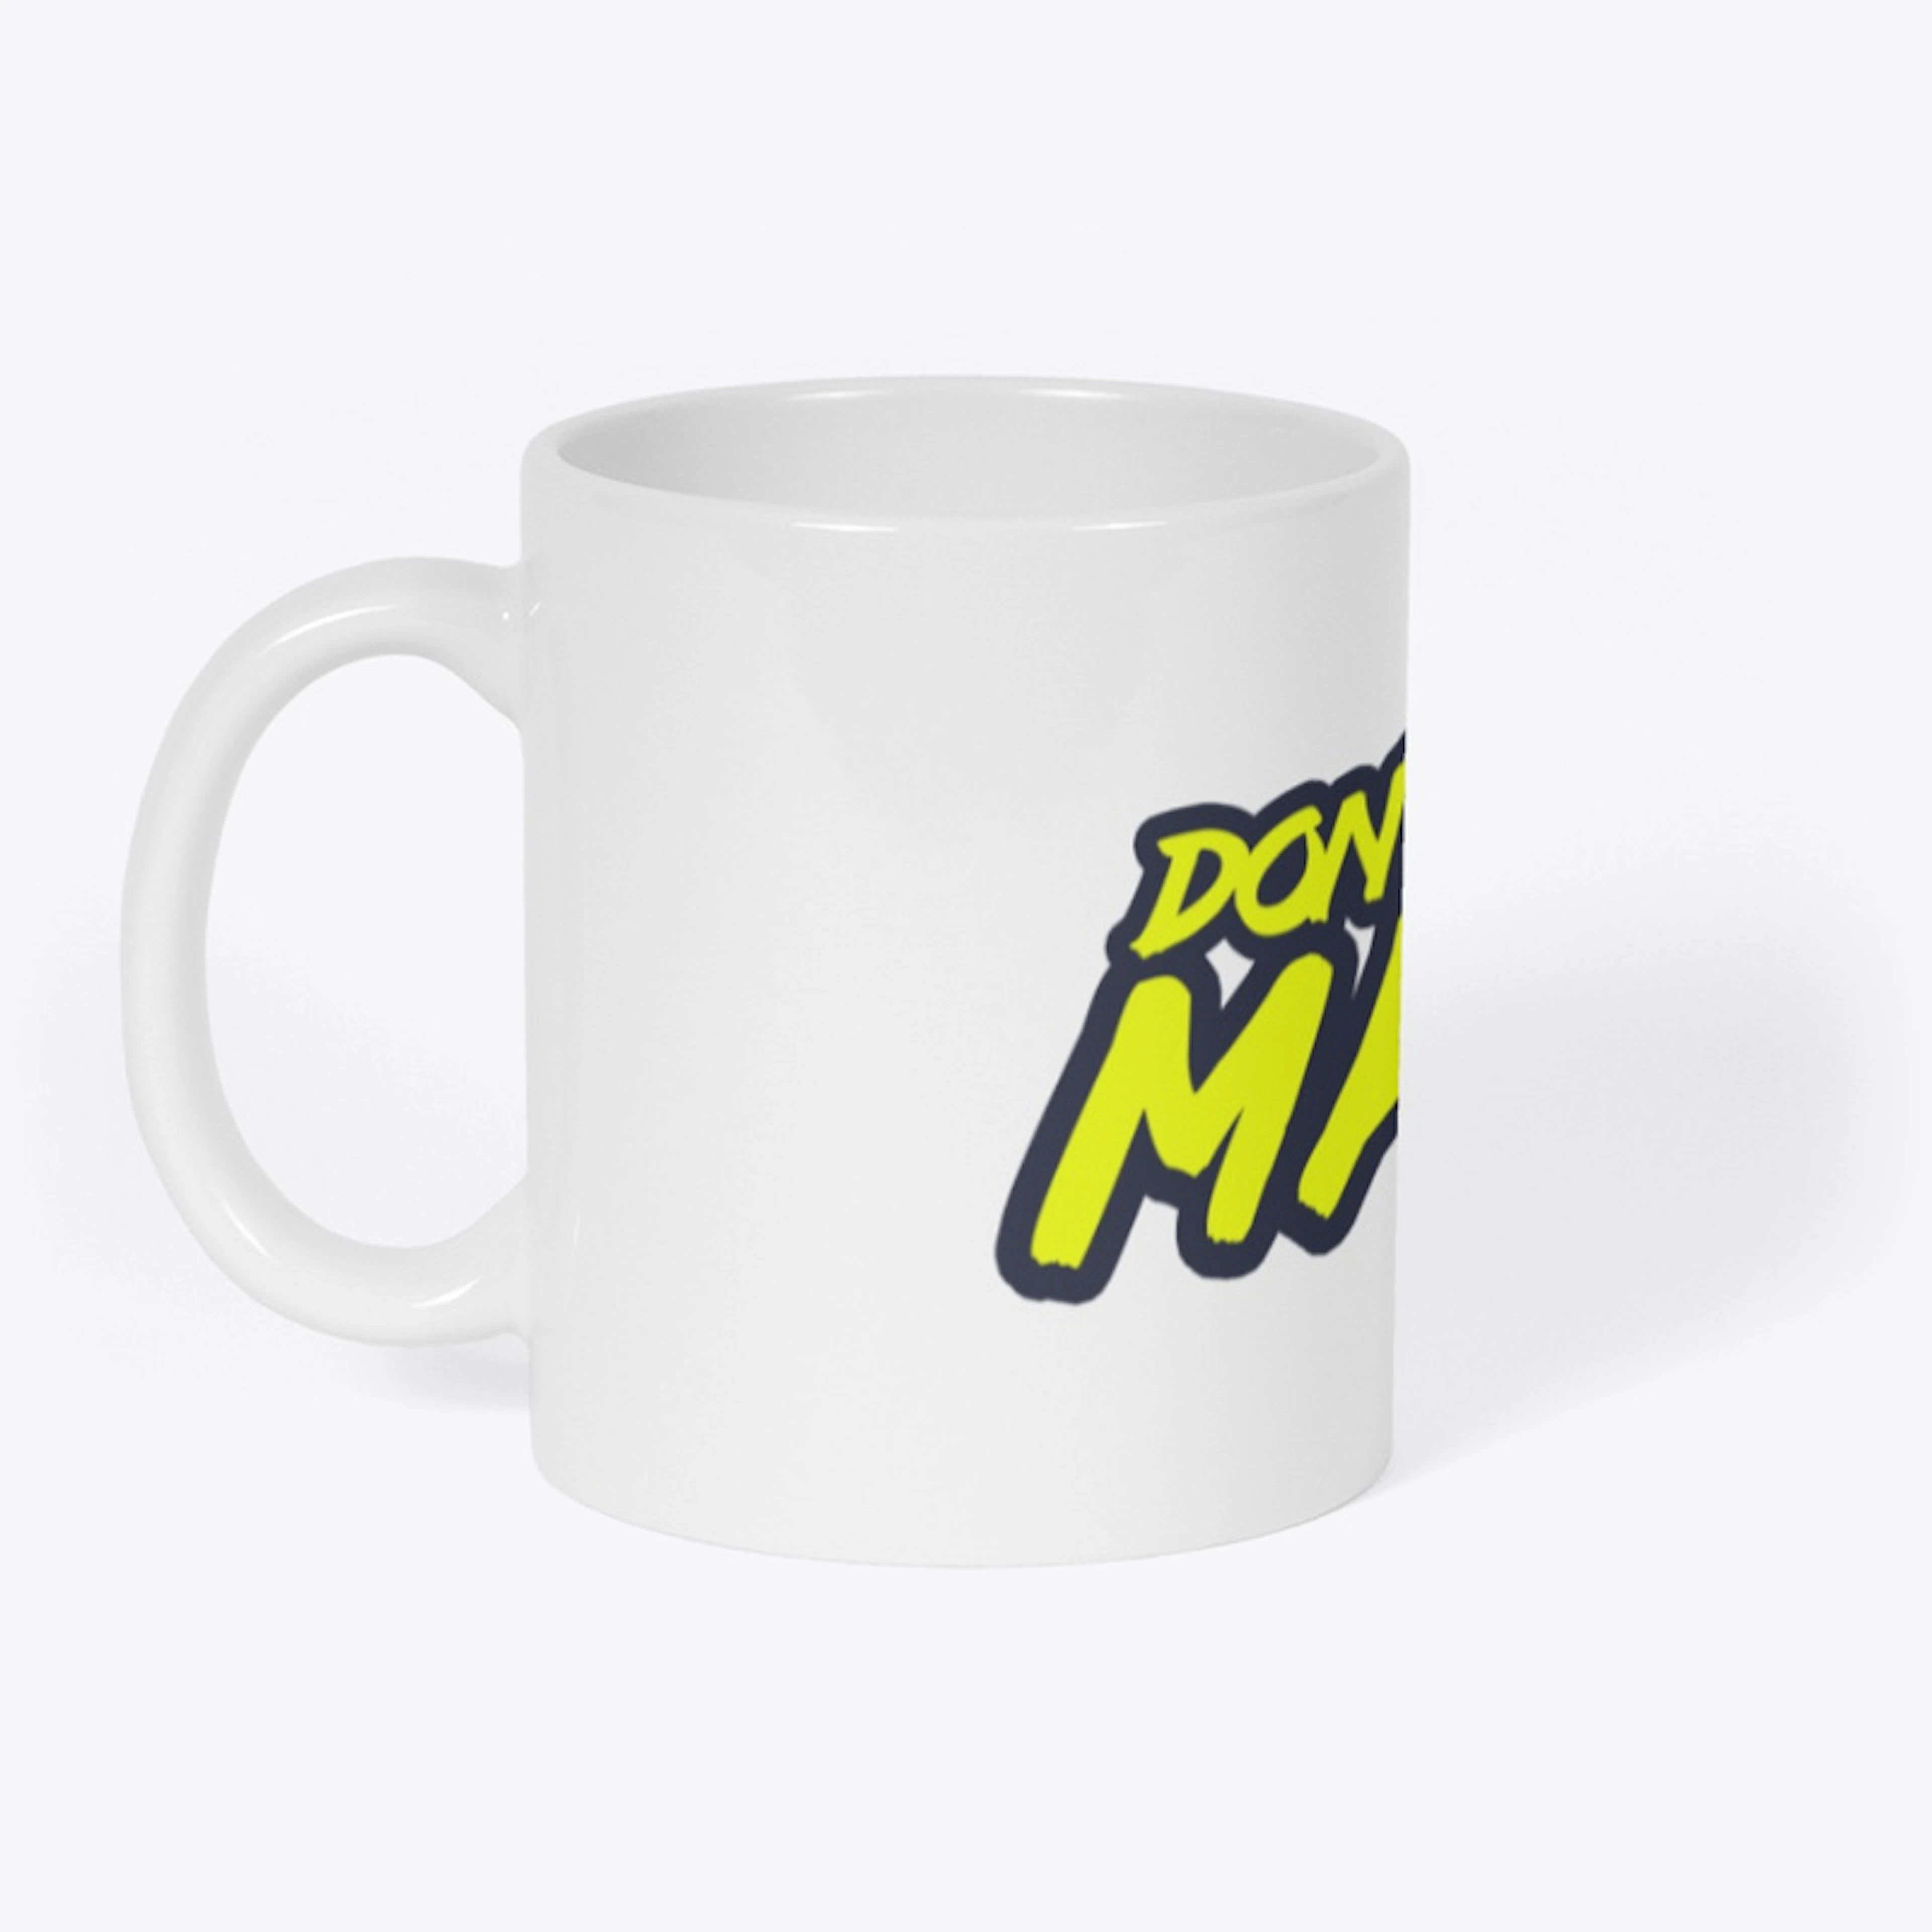 Don't Be A Manus mug